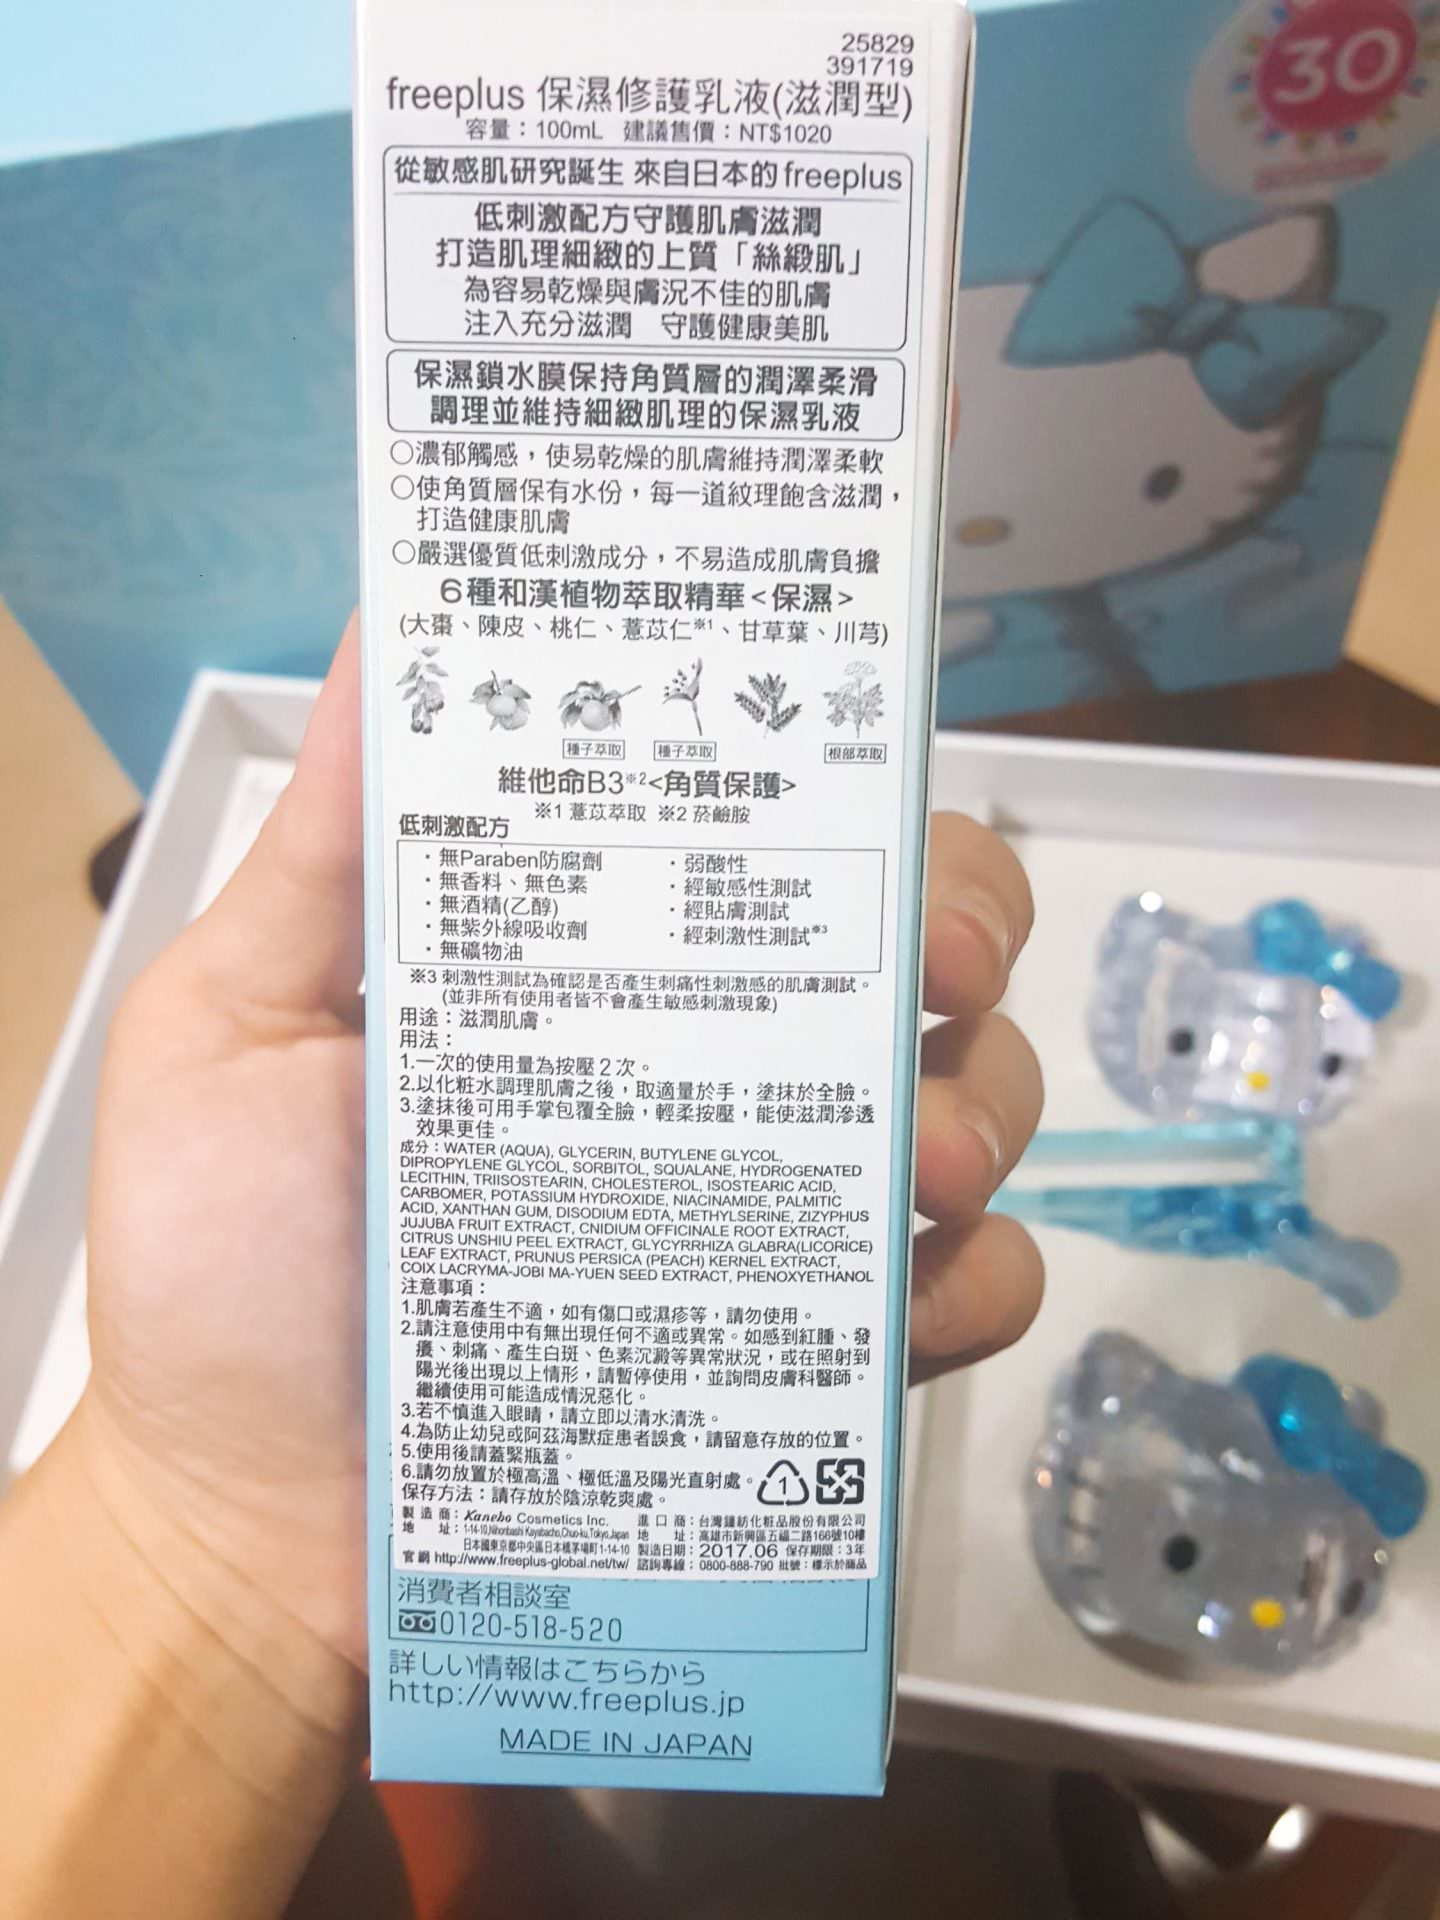 【保養】敏感乾肌專用|日本freeplus × Hello Kitty限量禮盒組 開箱文 | 使用心得